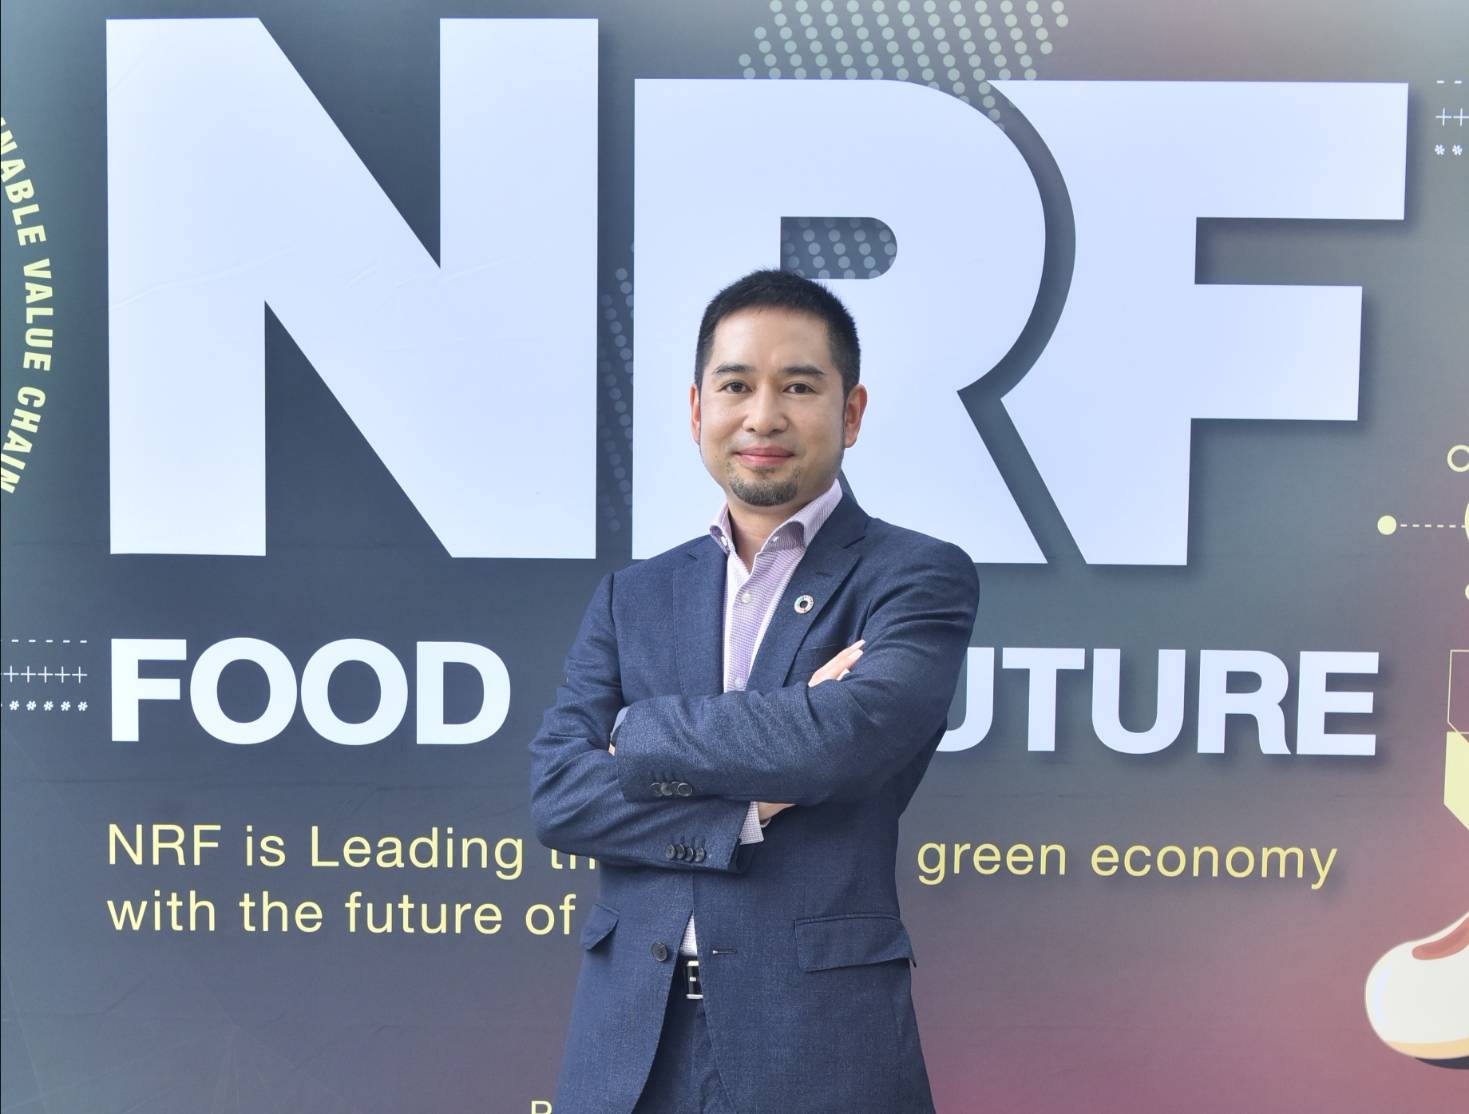 NRF ชี้การเปลี่ยนแปลงราคาหุ้น เป็นไปตามกลไกตลาด